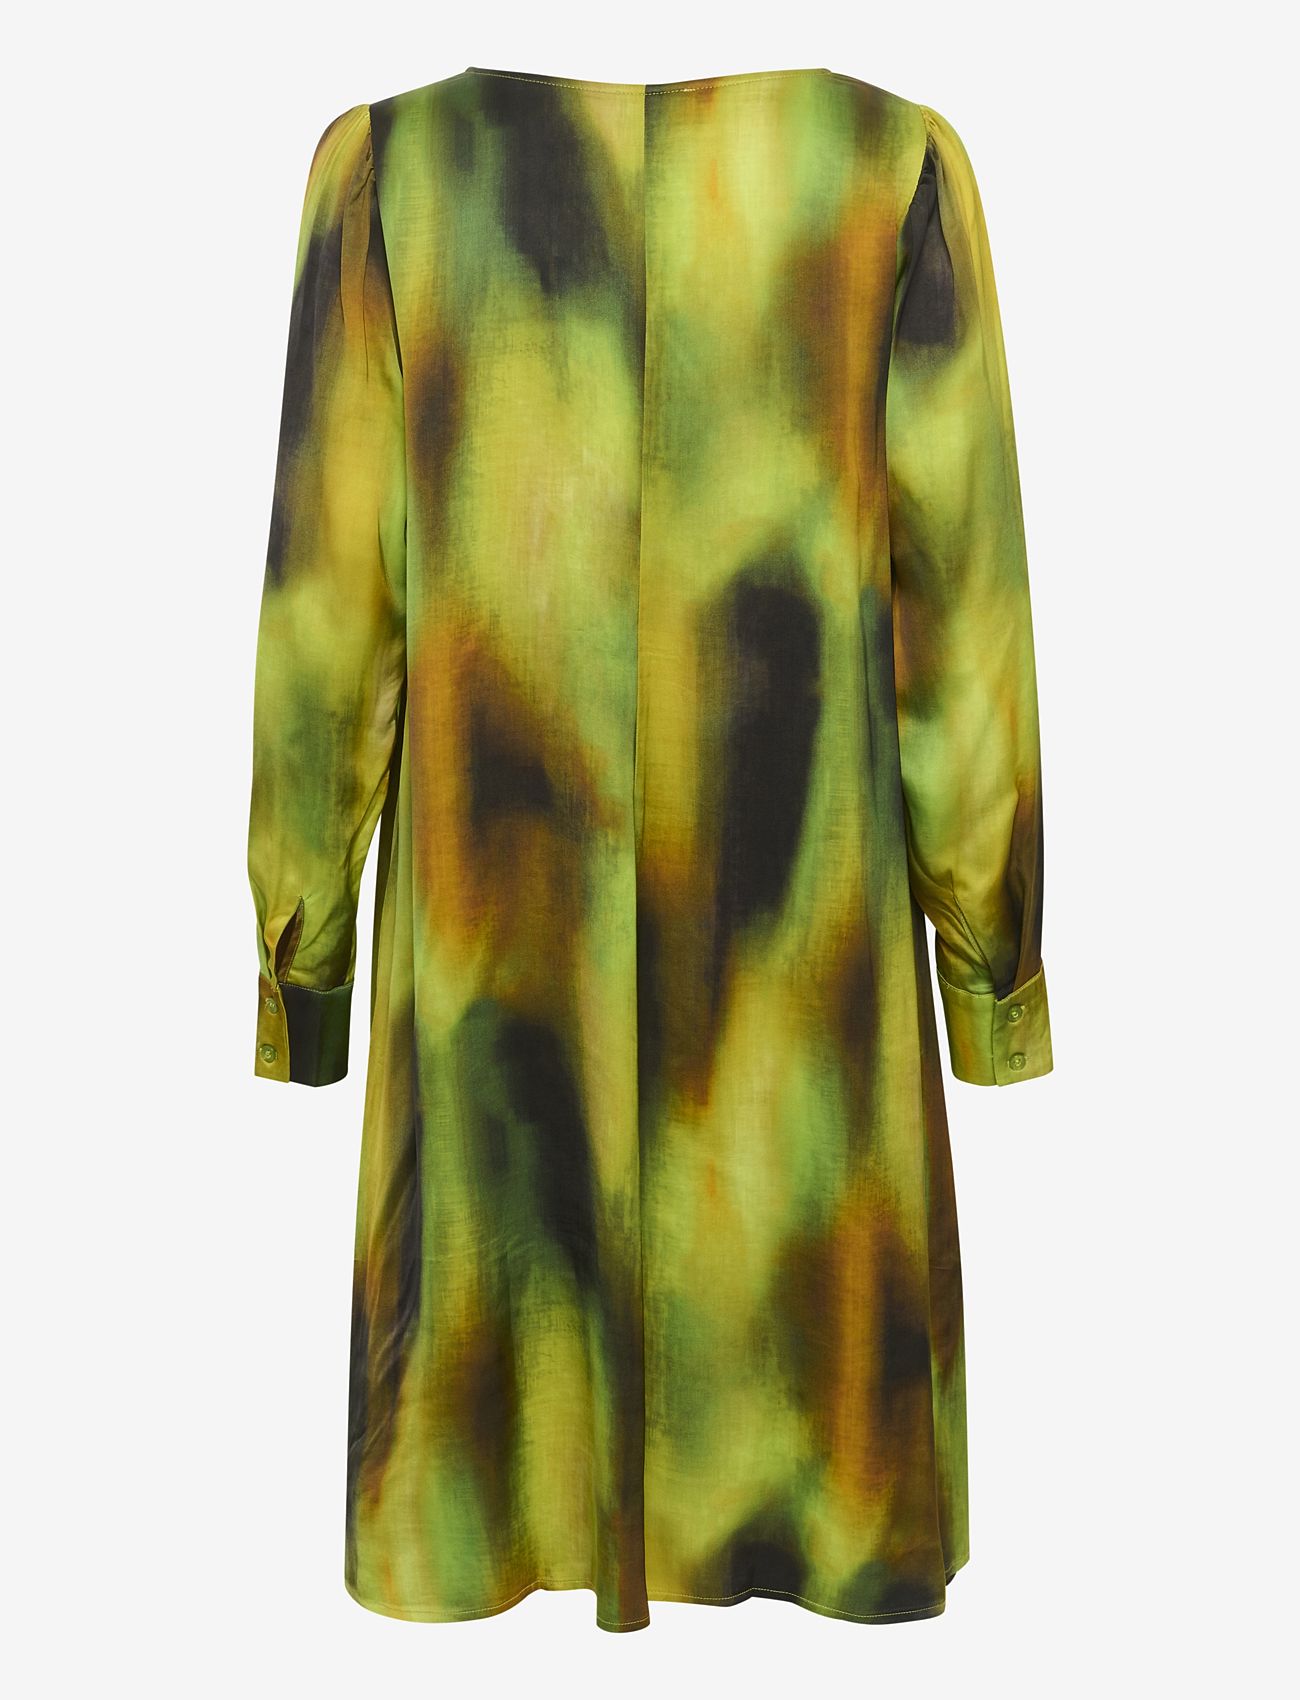 My Essential Wardrobe - TamaraMW Dress - vakarėlių drabužiai išparduotuvių kainomis - kelp forest green aop - 1